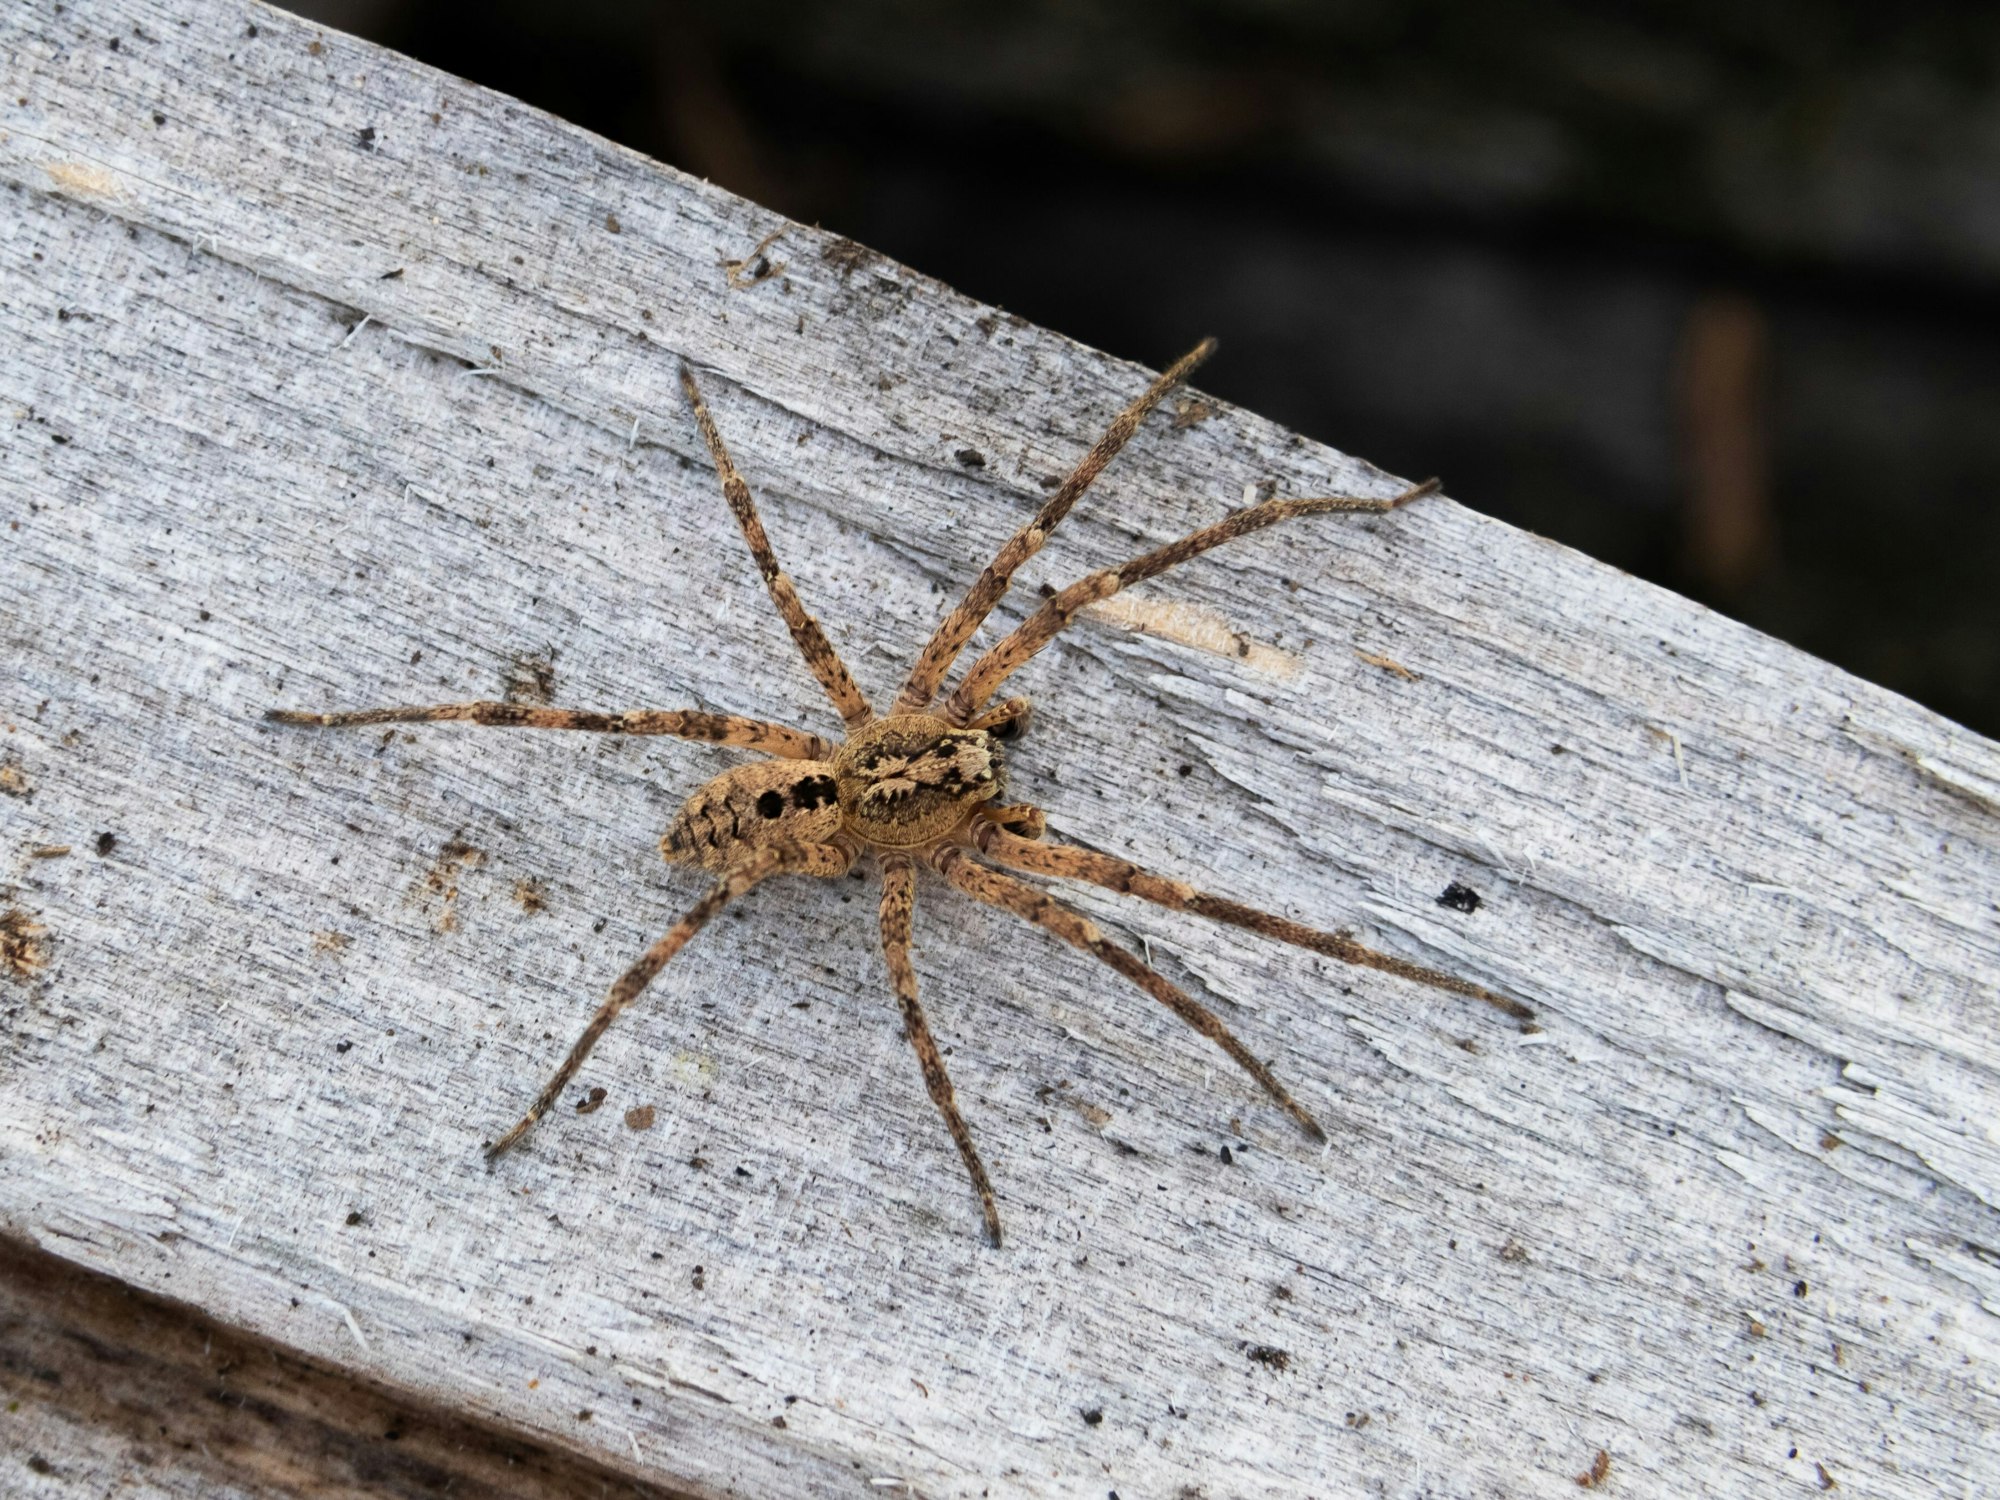 Das Foto zeigt eine Nosferatu-Spinne auf einem Holzblock.